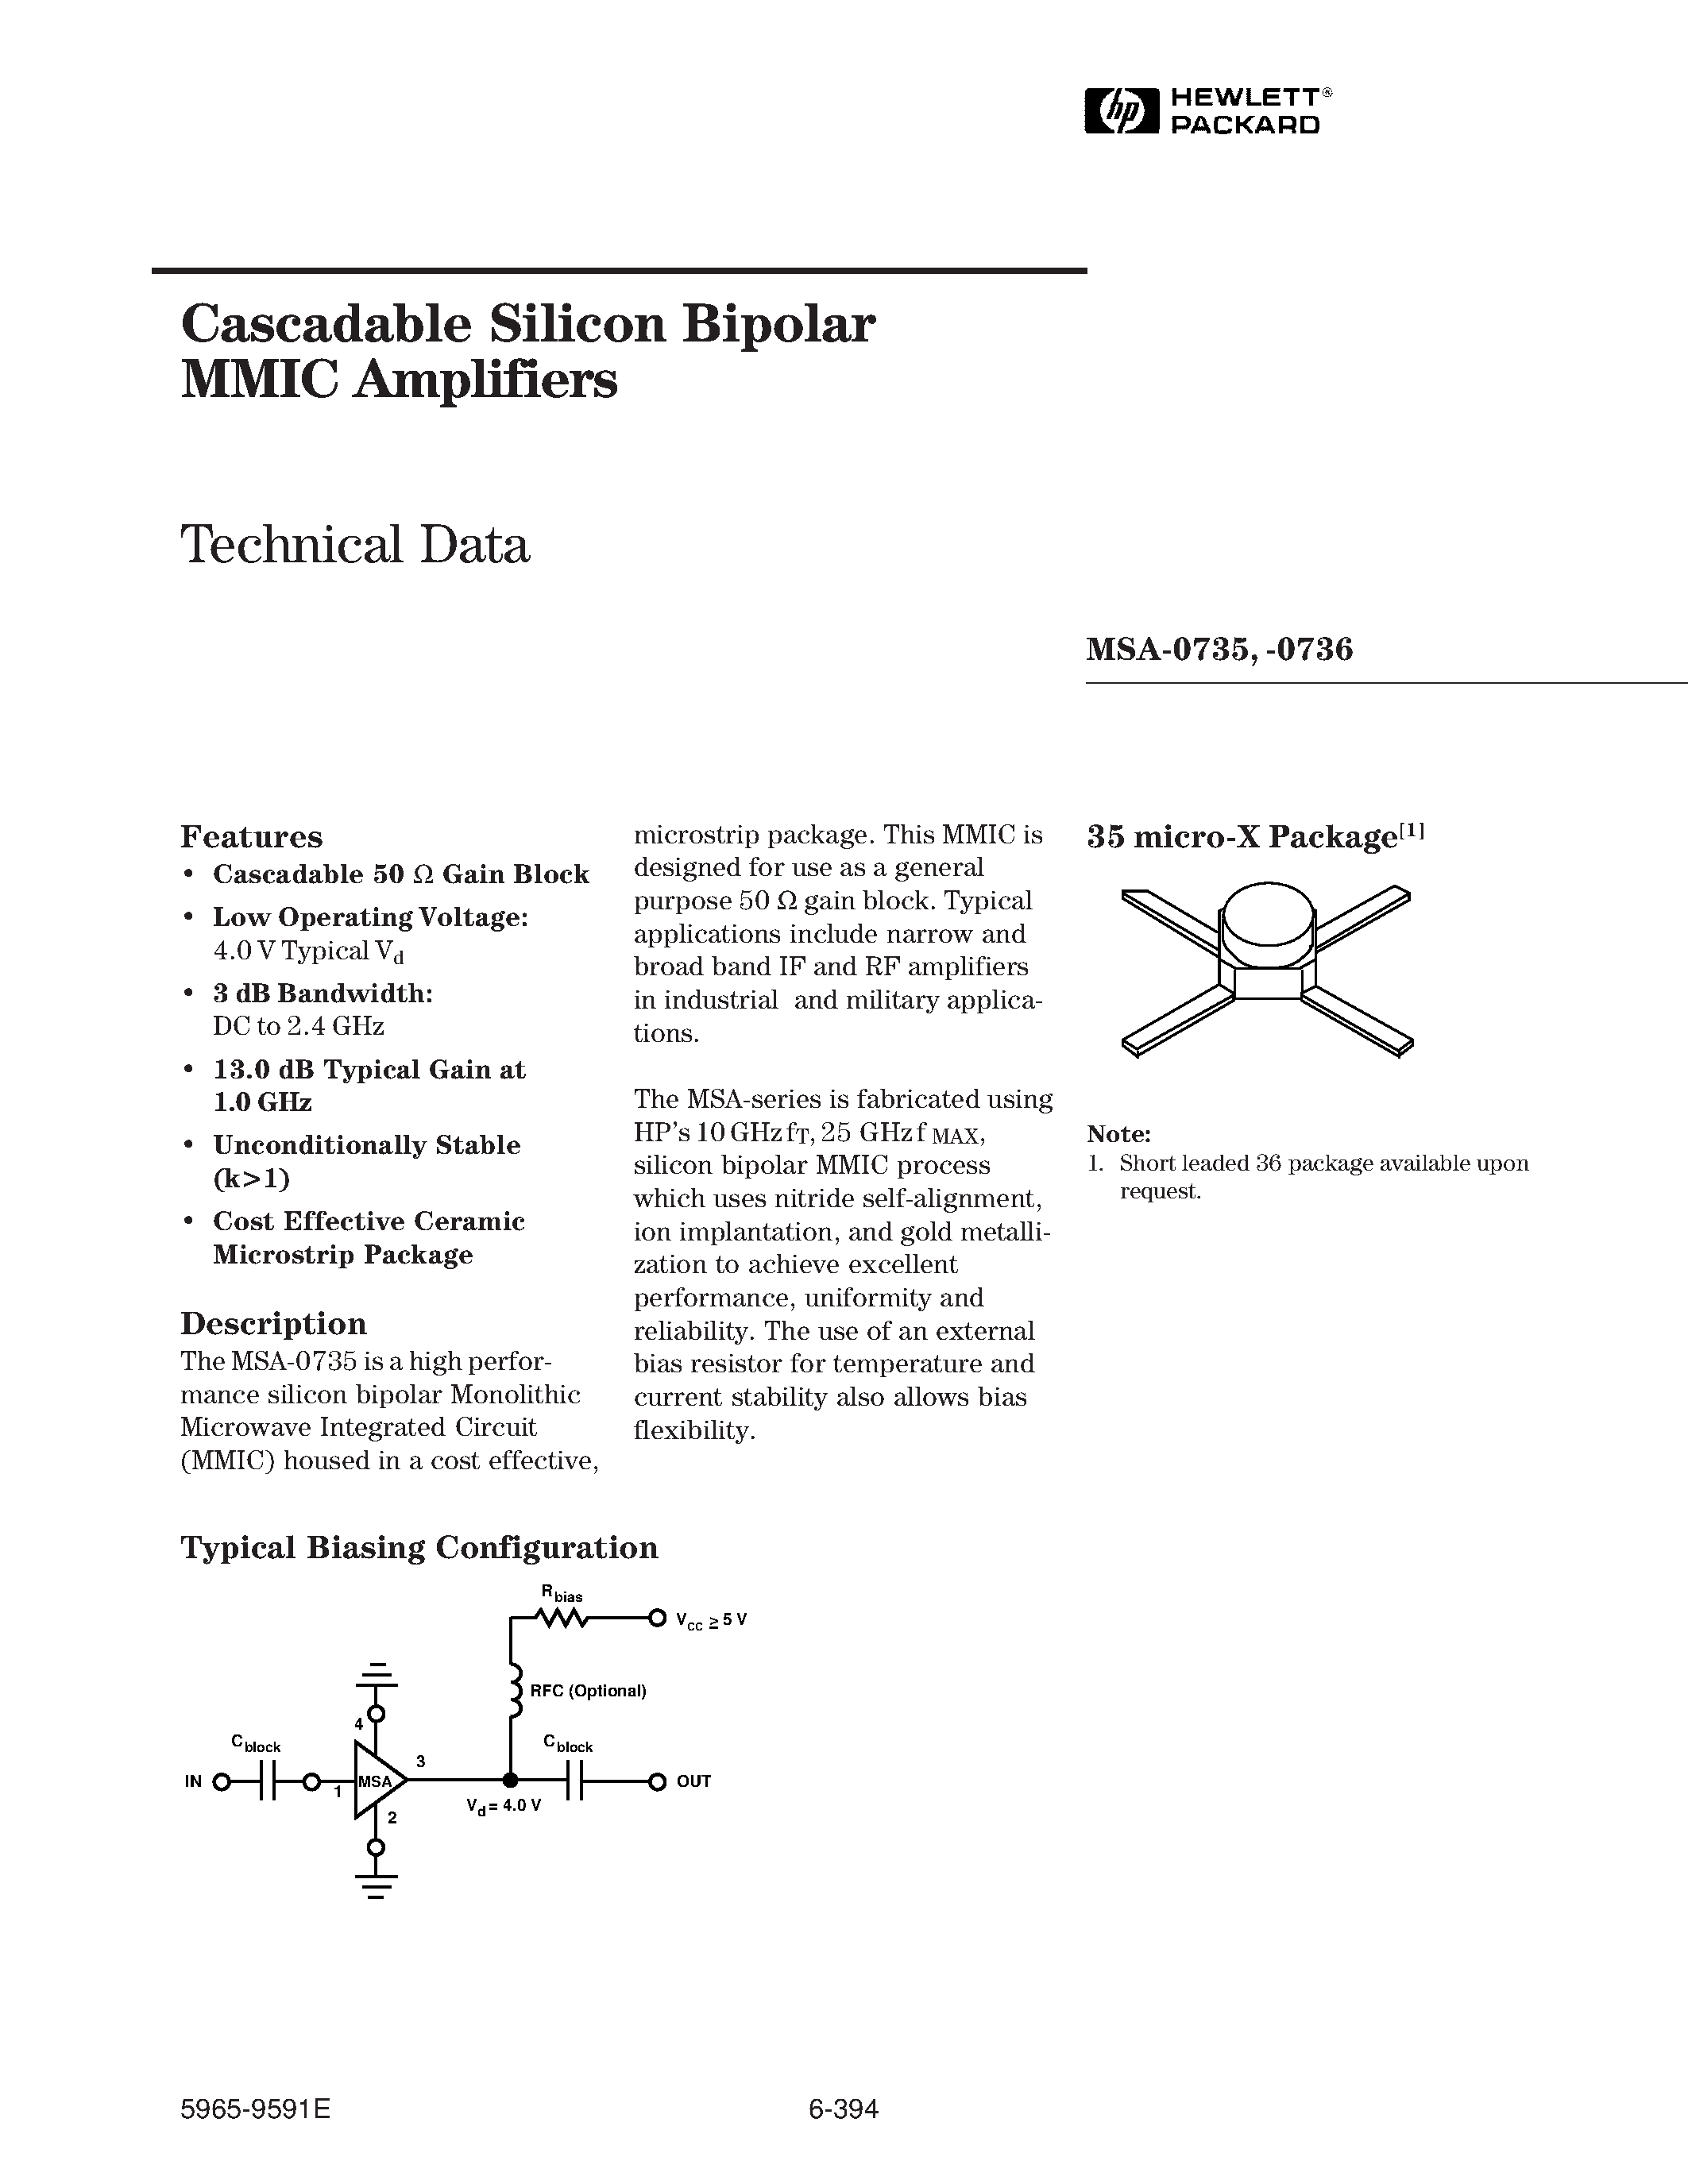 Даташит MSA-0735 - (MSA-0735 / MSA-0736) Cascadable Silicon Bipolar MMIC Amplifier страница 1